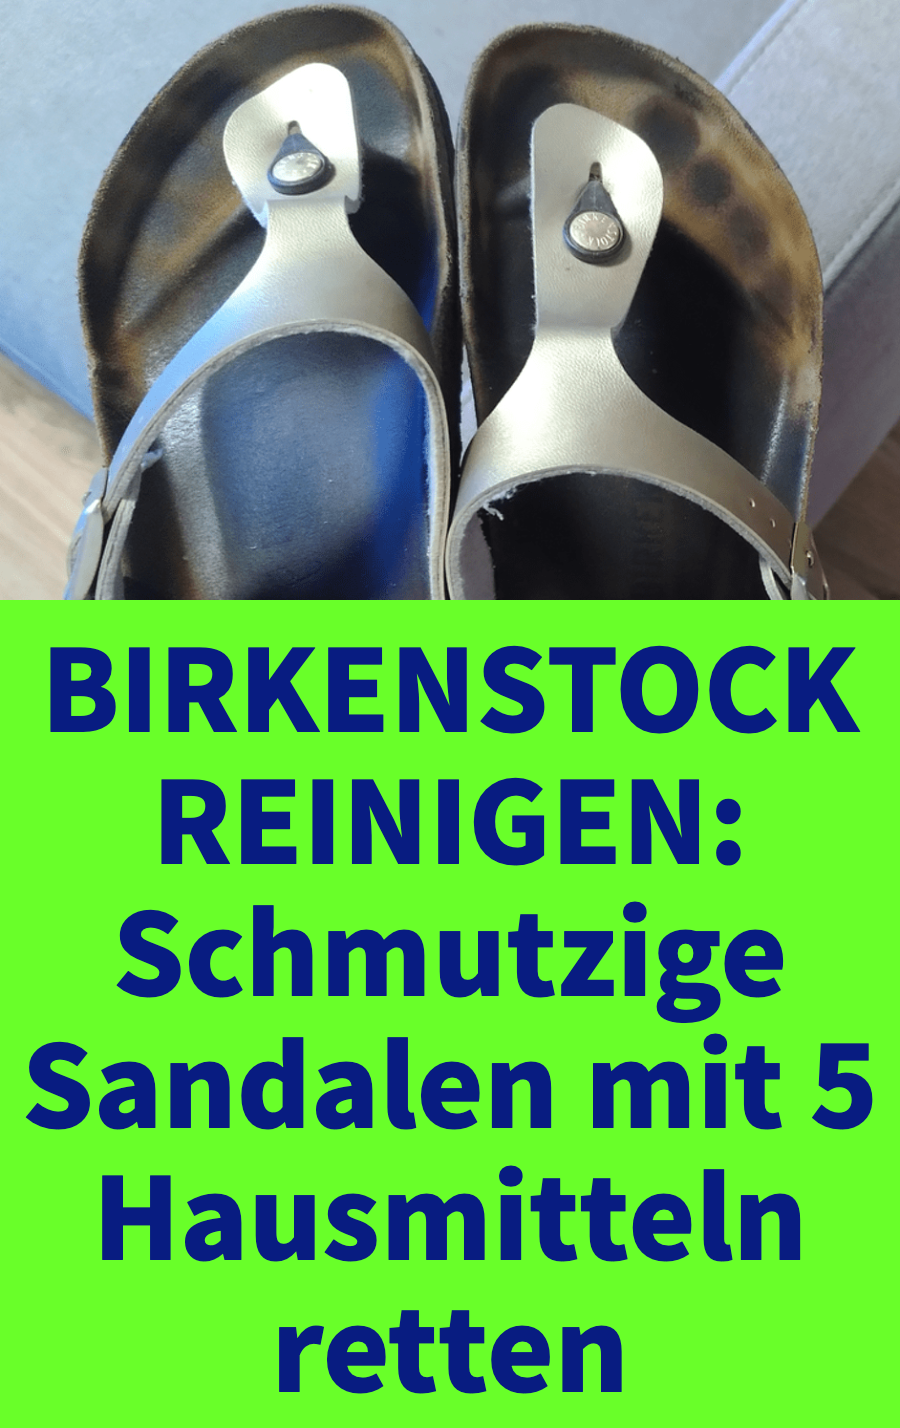 5 Hausmittel, um Birkenstock-Sandalen zu reinigen